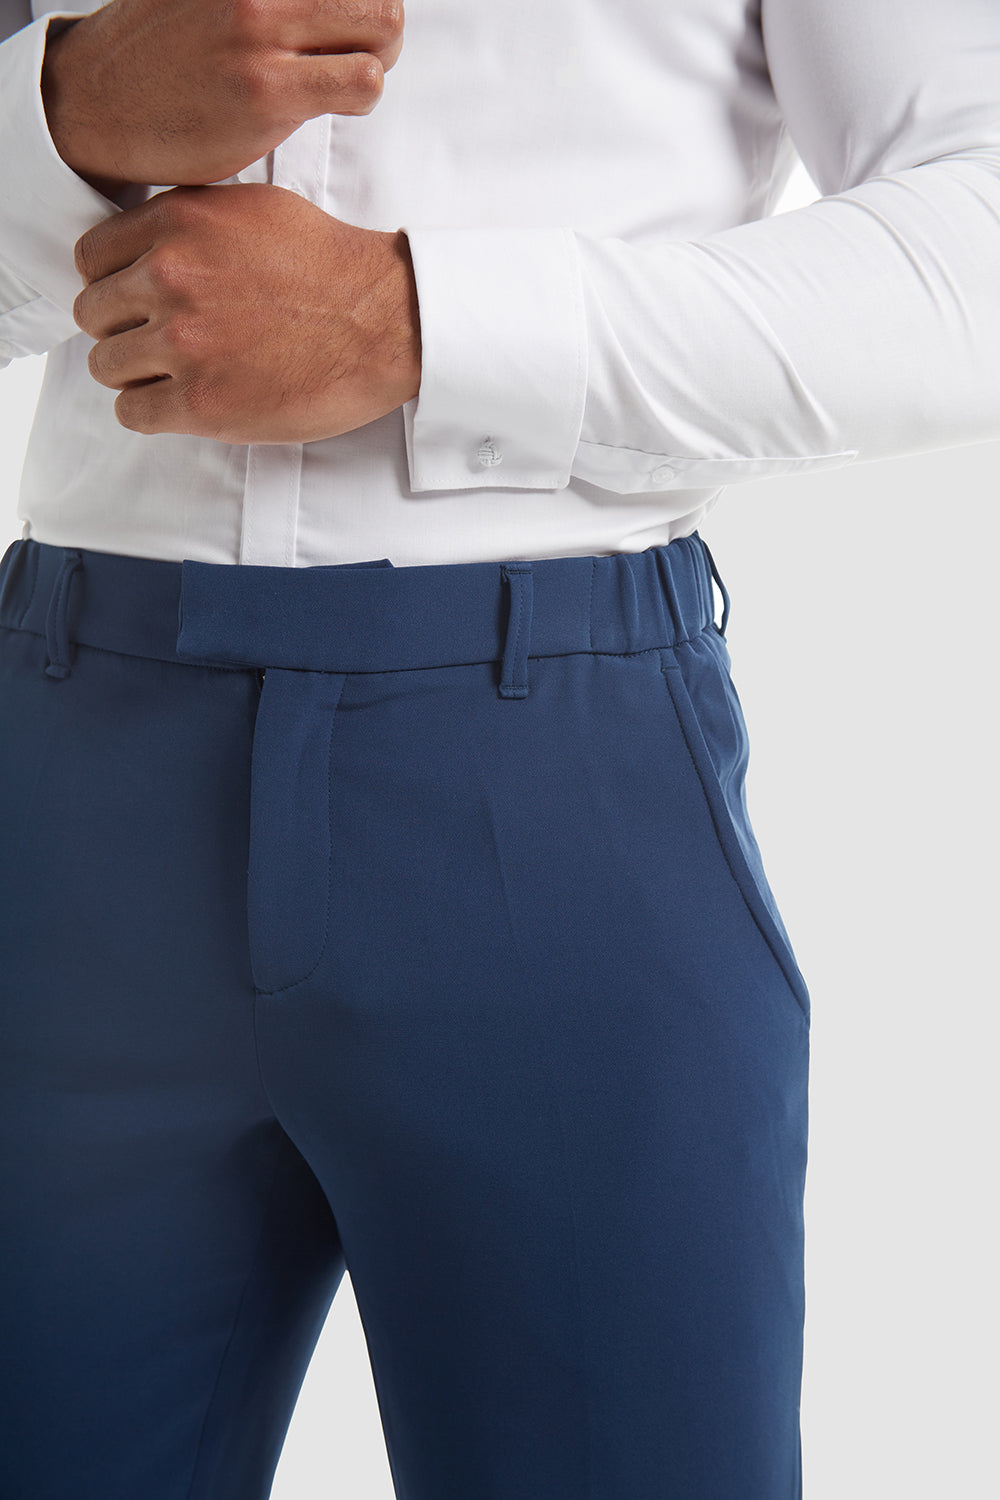 Blue Flat Front Pants – Upscale Men's Fashion